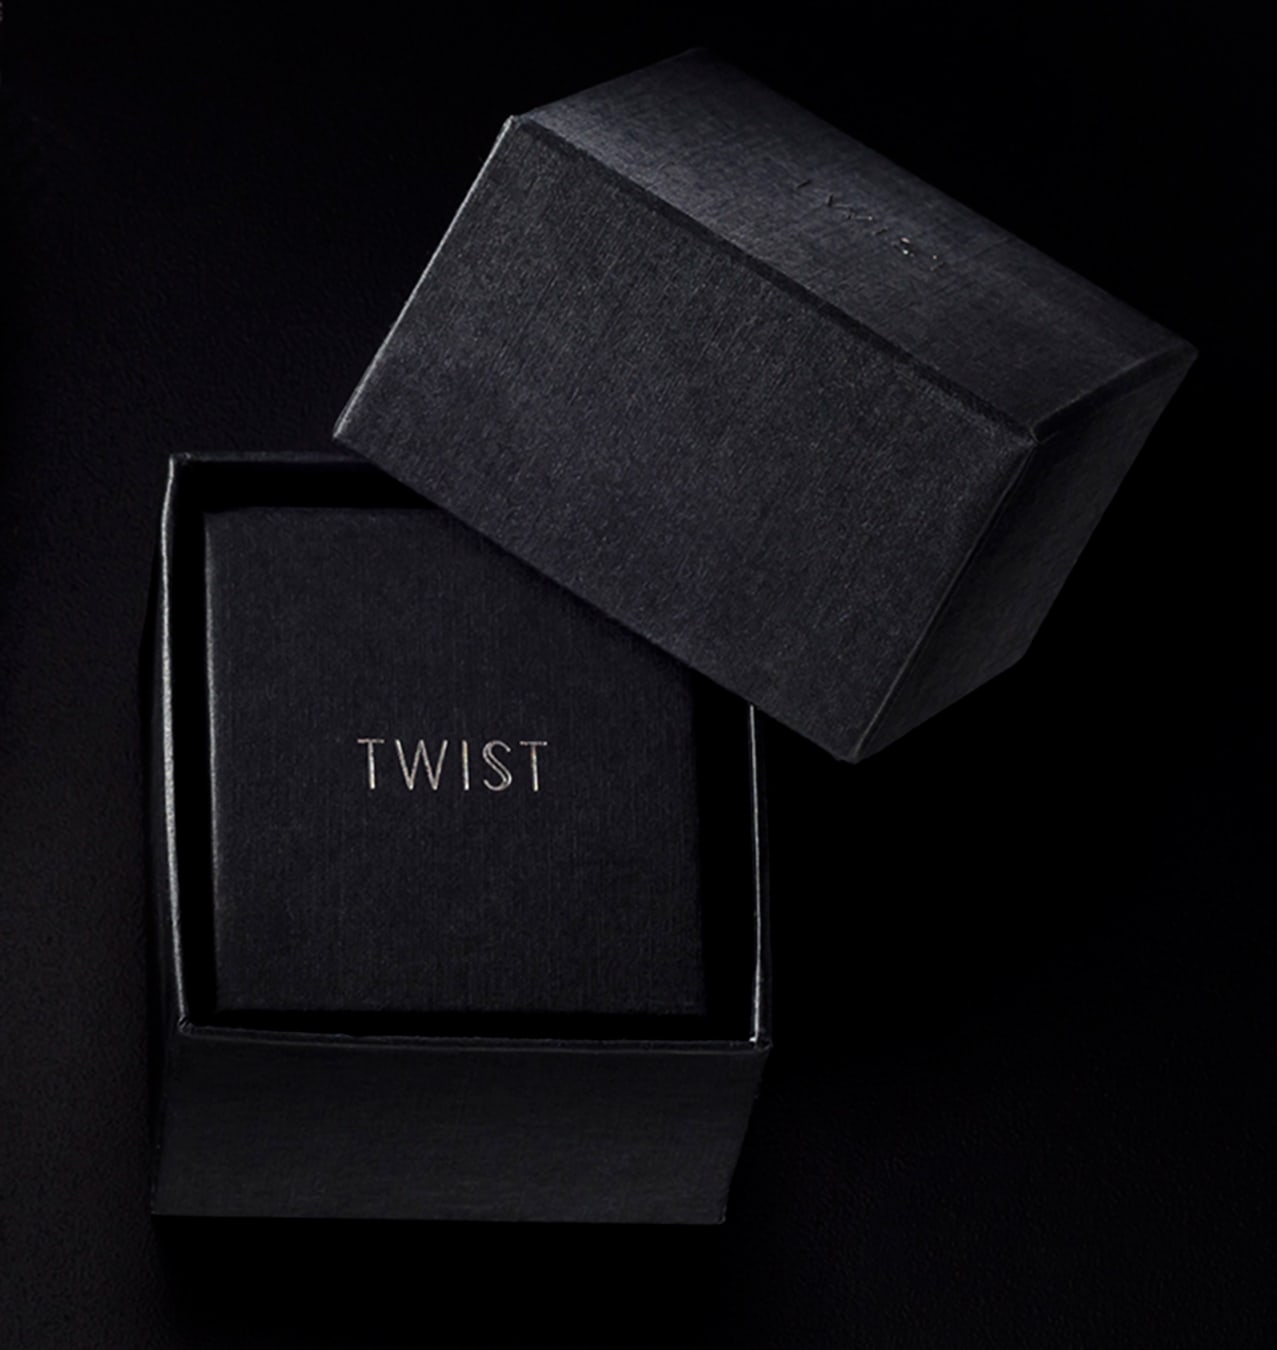 Twist Fine Jewelry packaging design